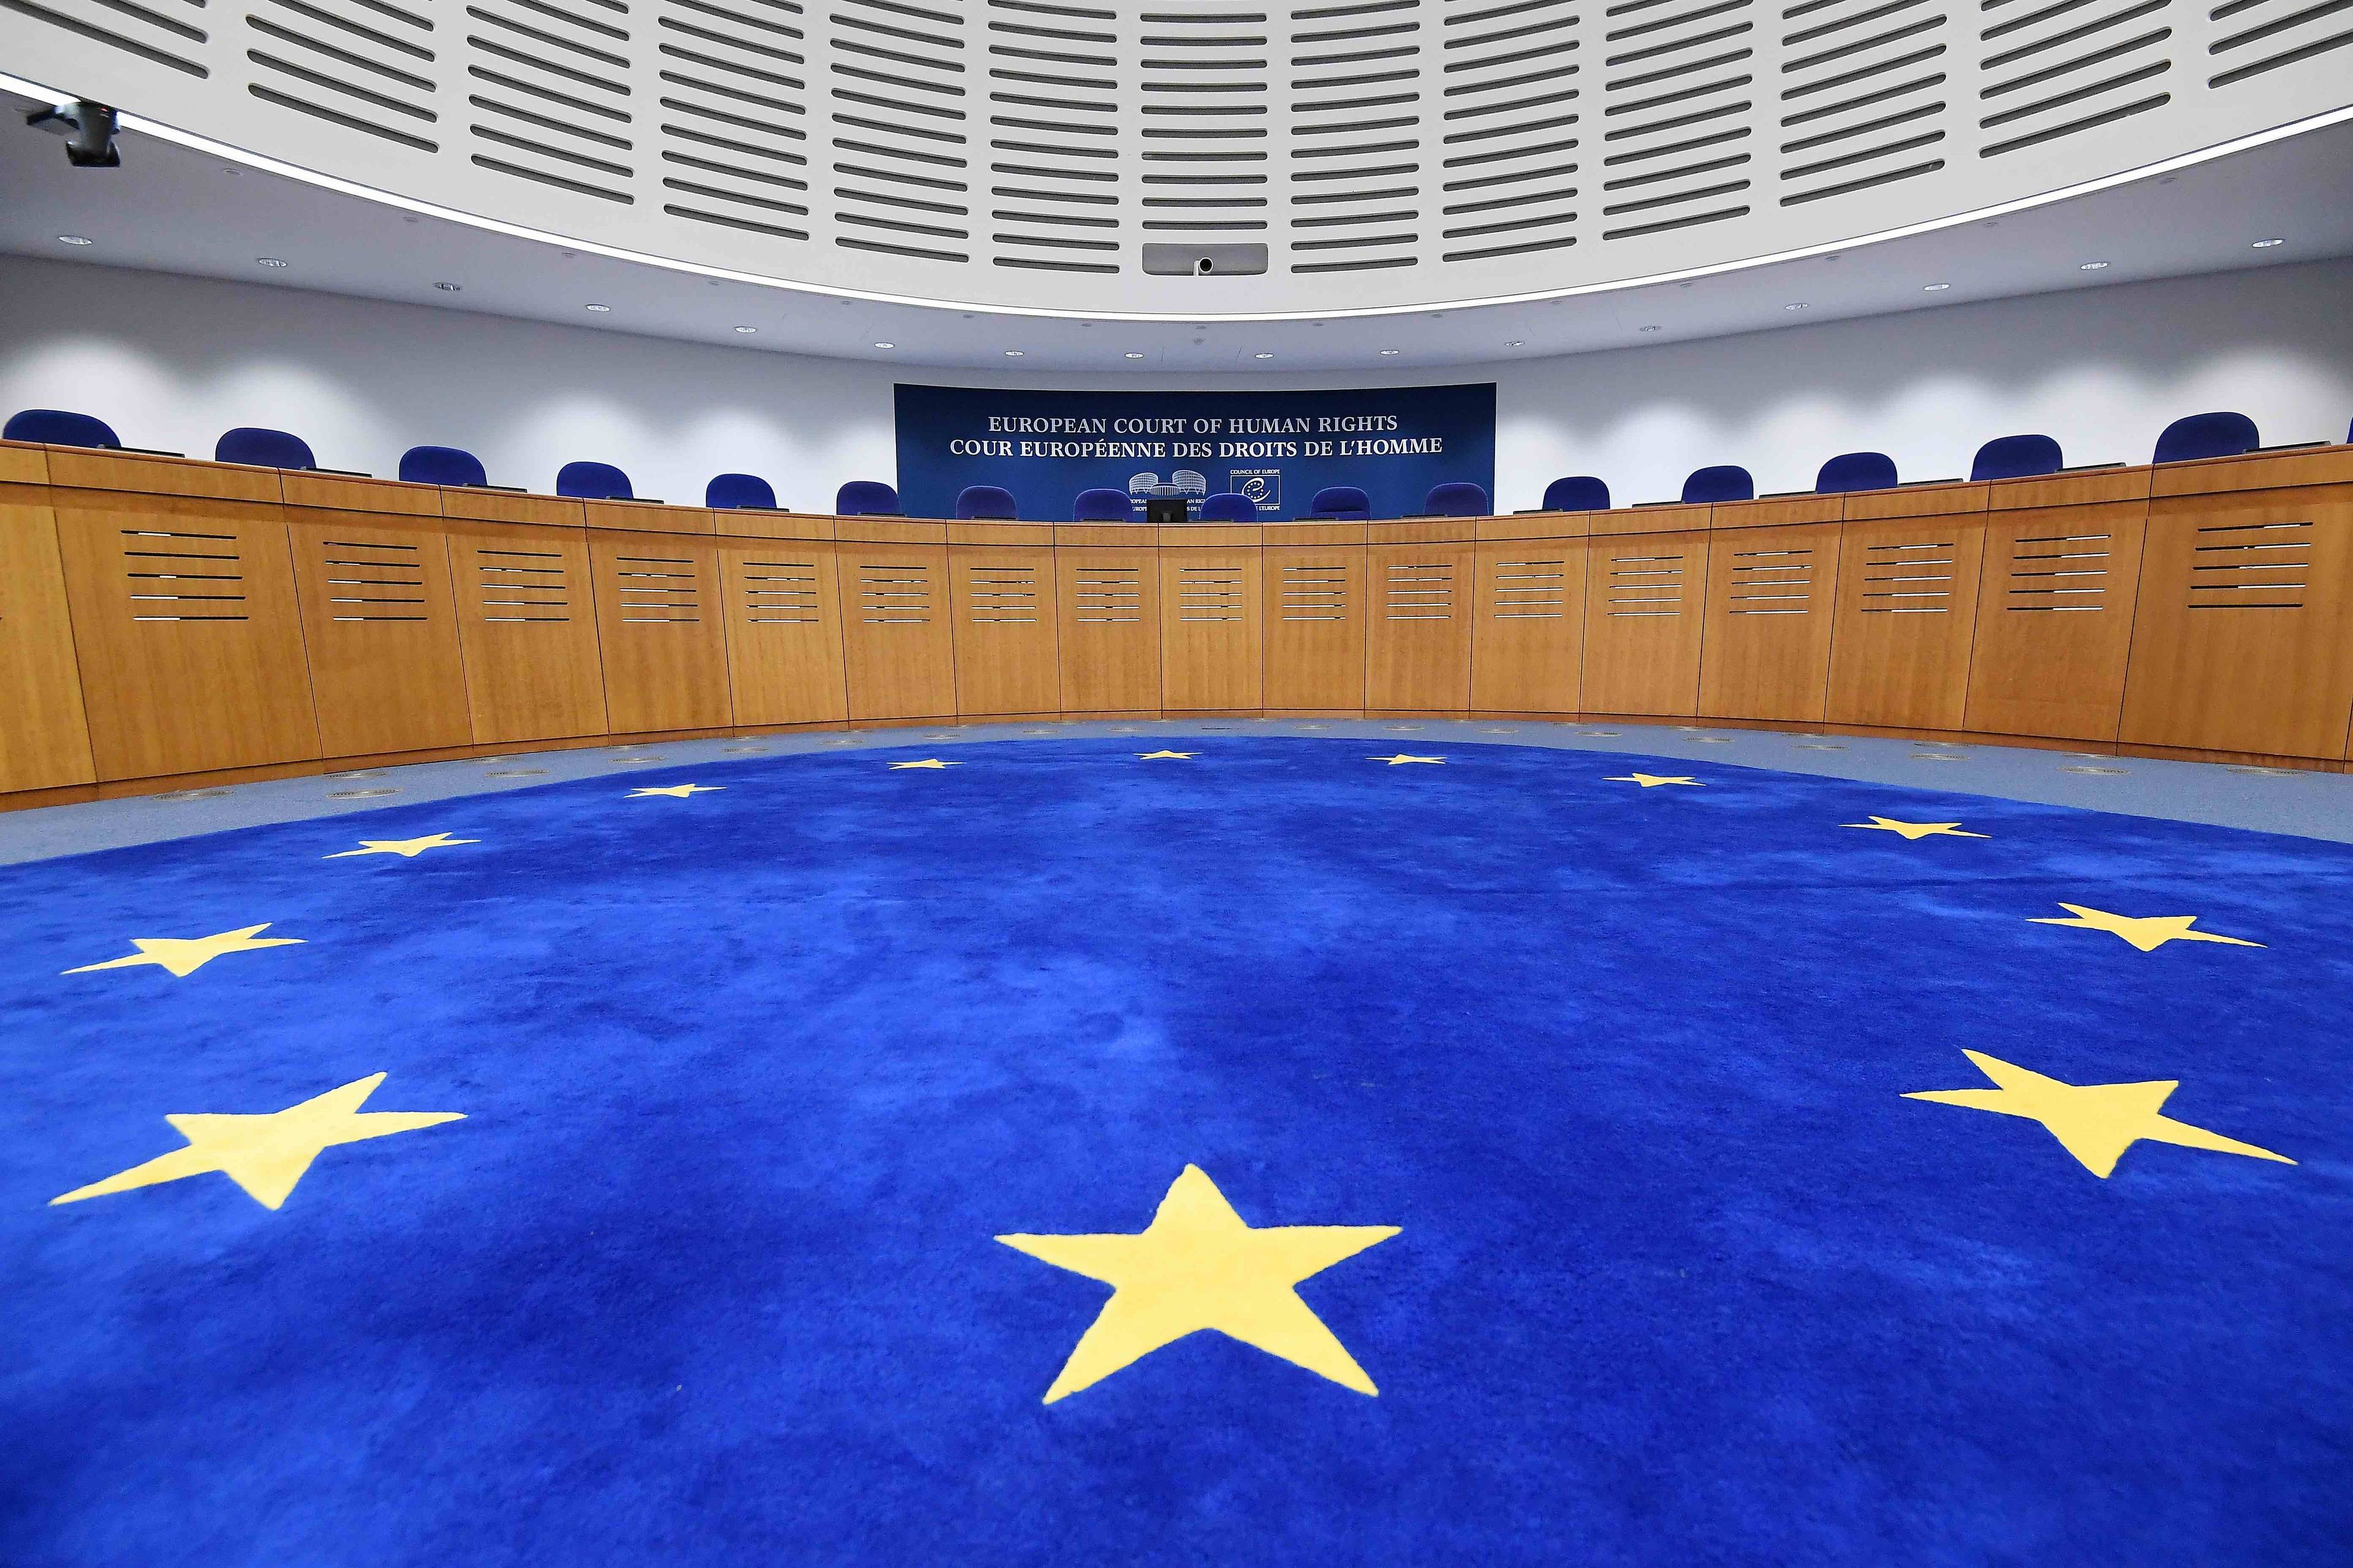 Sala Europejskiego Trybunału Praw Człowieka, na niebieskiej wykładzinie widać złote gwiazdy